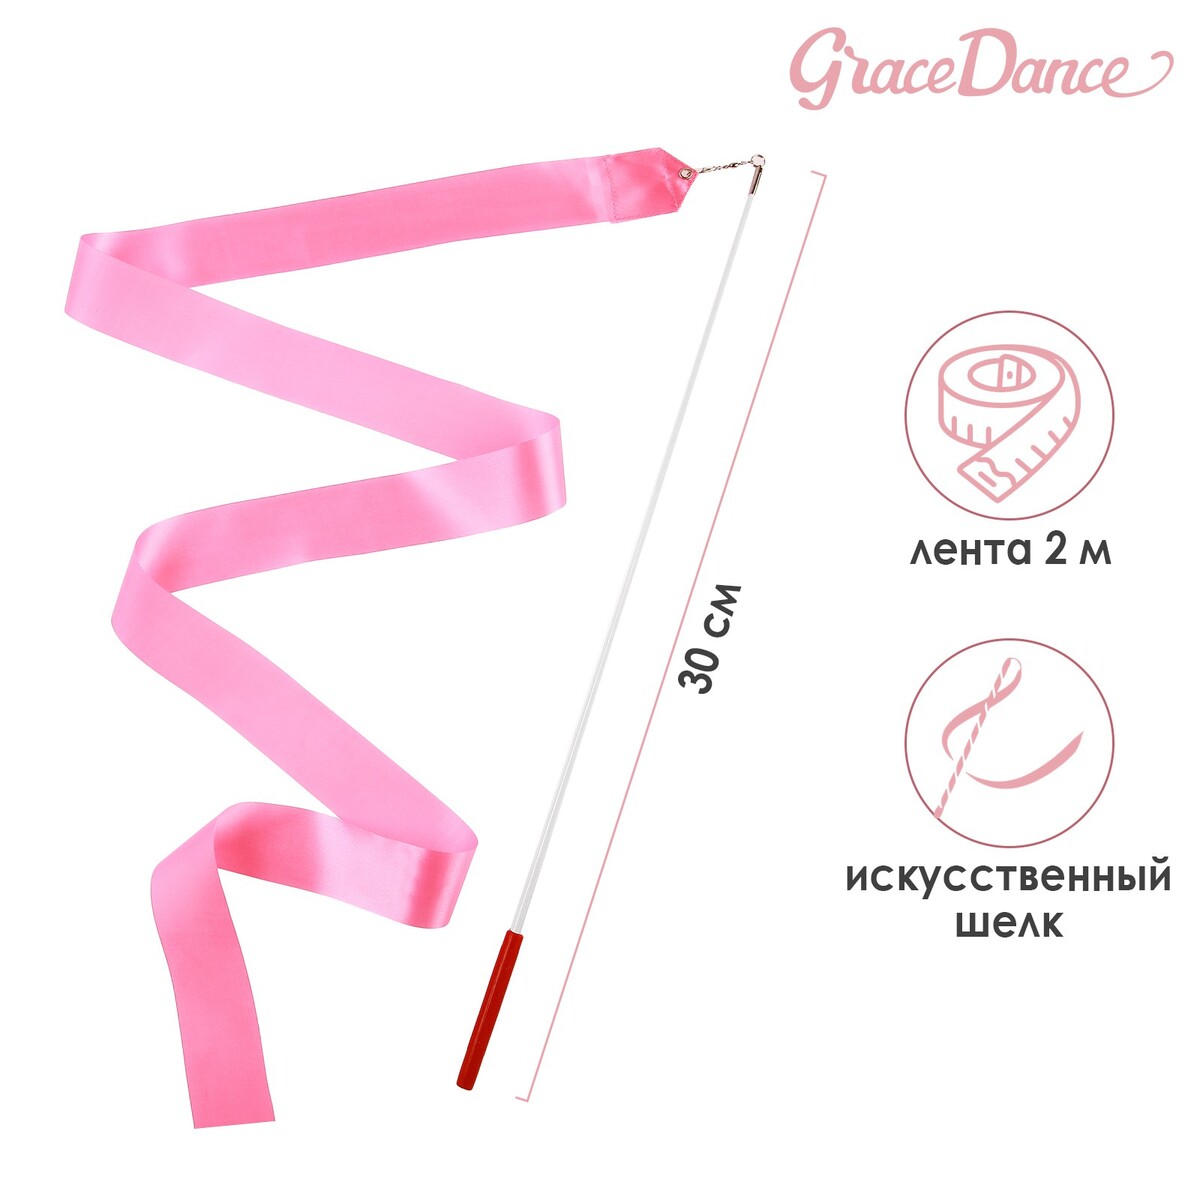 Лента для художественной гимнастики с палочкой grace dance, 2 м, цвет розовый лента фиксации rockbros для перевозки и хранения велосипедов зеленый rb 51210071002